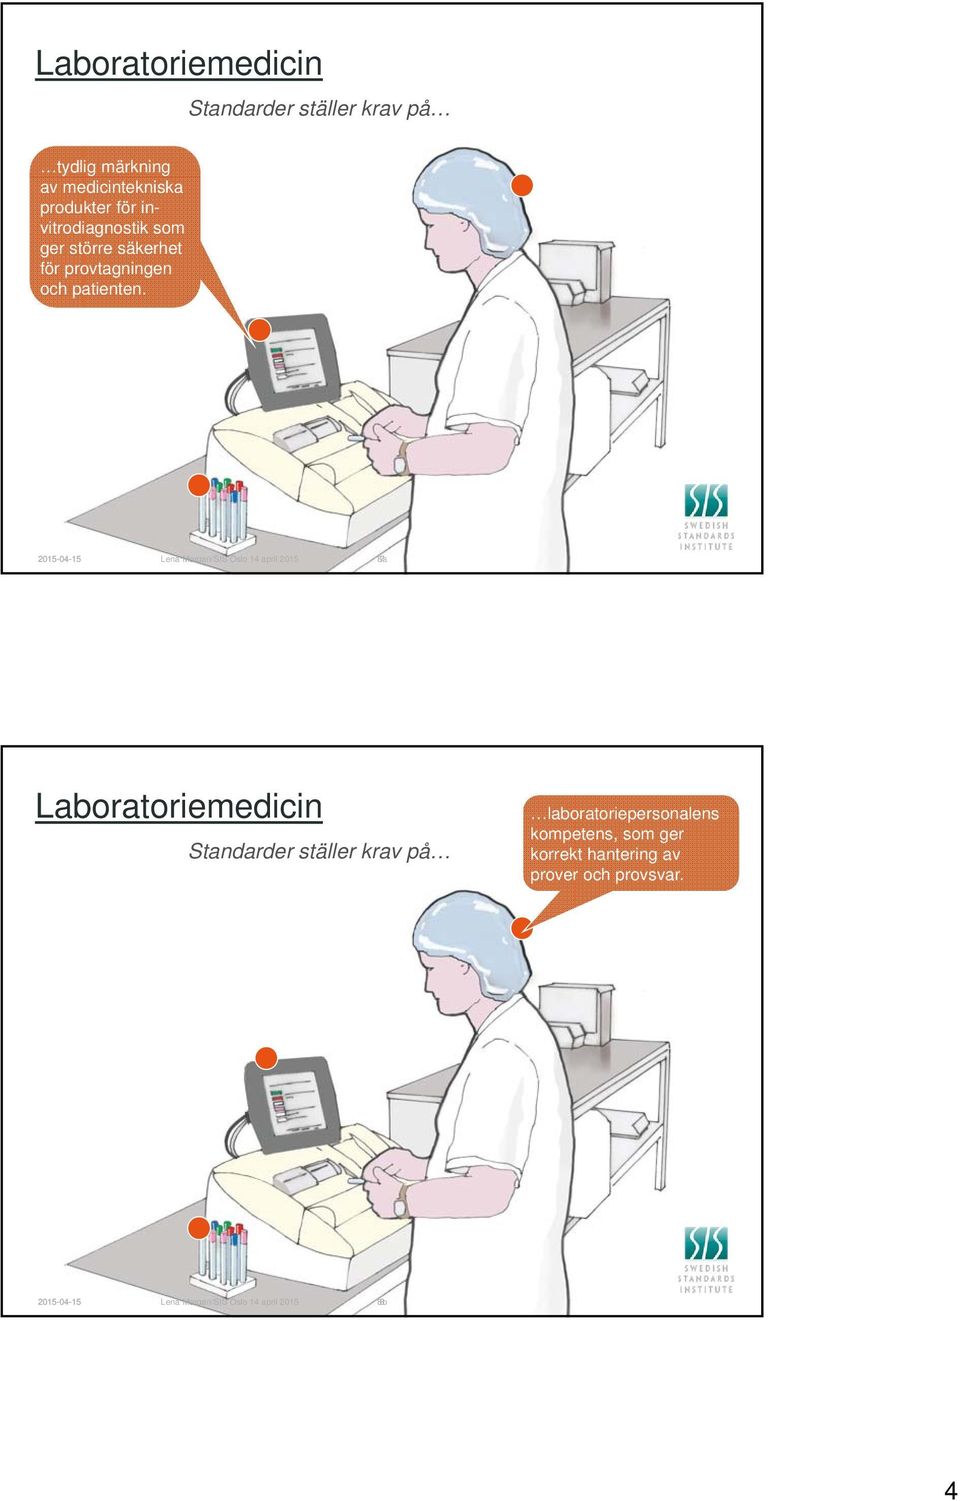 2015-04-15 Lena Morgan/SIS Oslo 14 april 2015 8a 7 Laboratoriemedicin Standarder ställer krav på